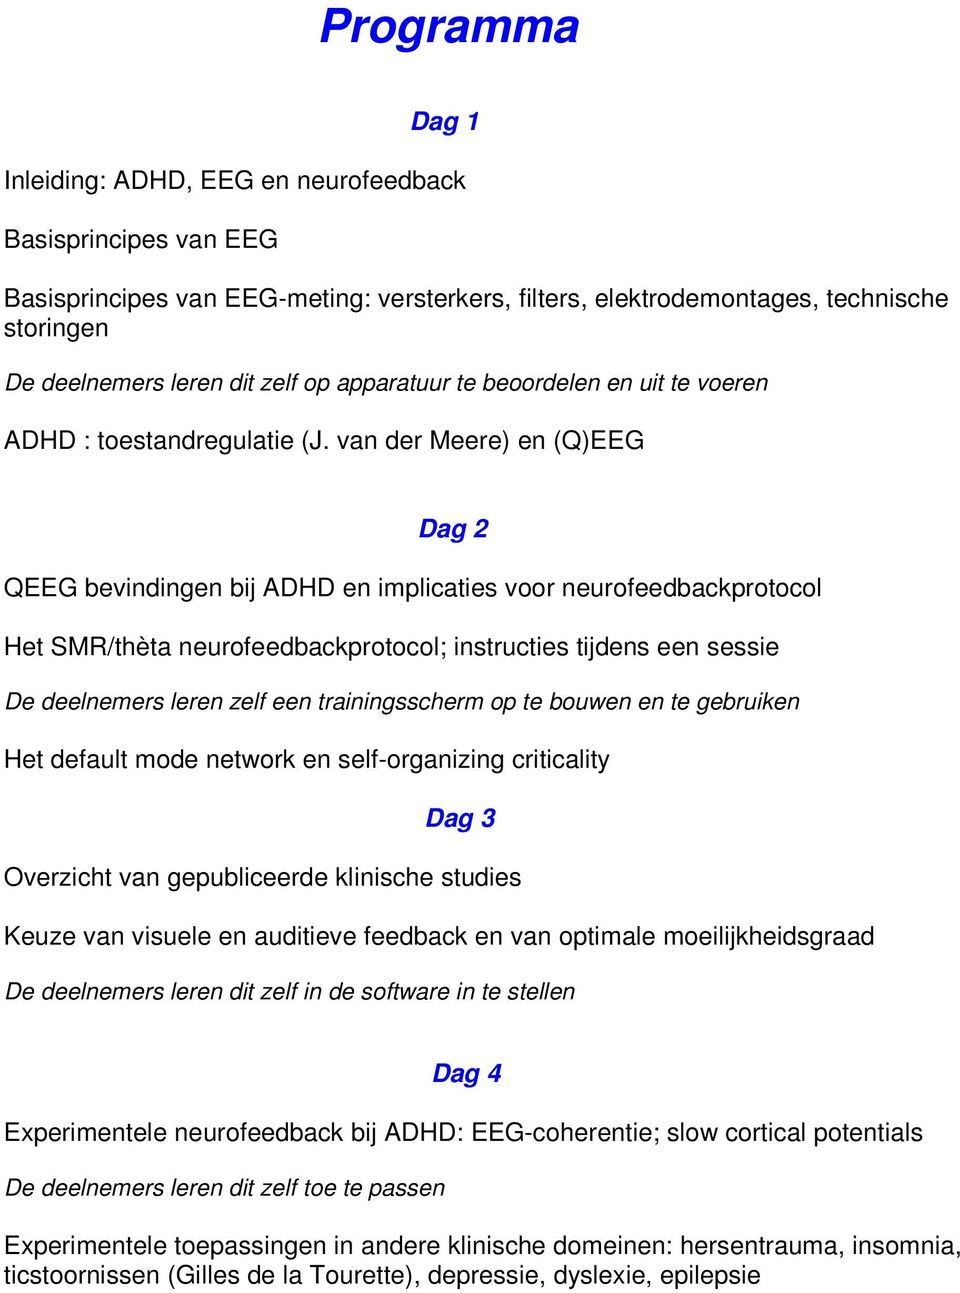 van der Meere) en (Q)EEG Dag 2 QEEG bevindingen bij ADHD en implicaties voor neurofeedbackprotocol Het SMR/thèta neurofeedbackprotocol; instructies tijdens een sessie De deelnemers leren zelf een